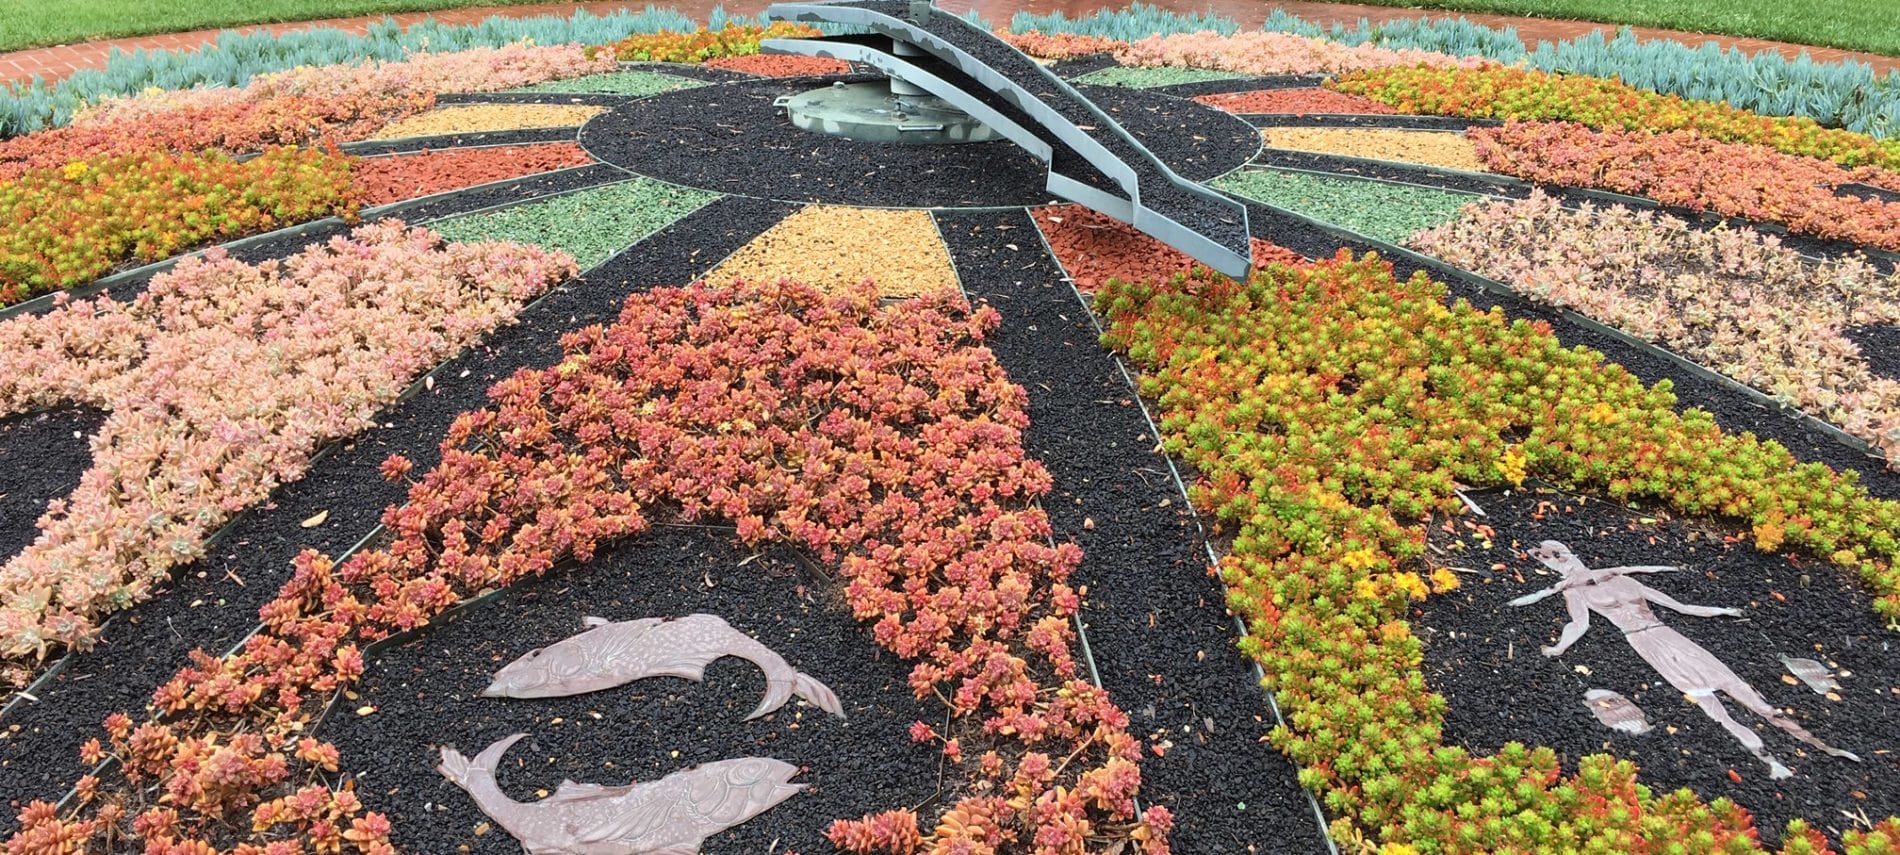 beautiful colorful garden design at Lotusland in Santa Barbara